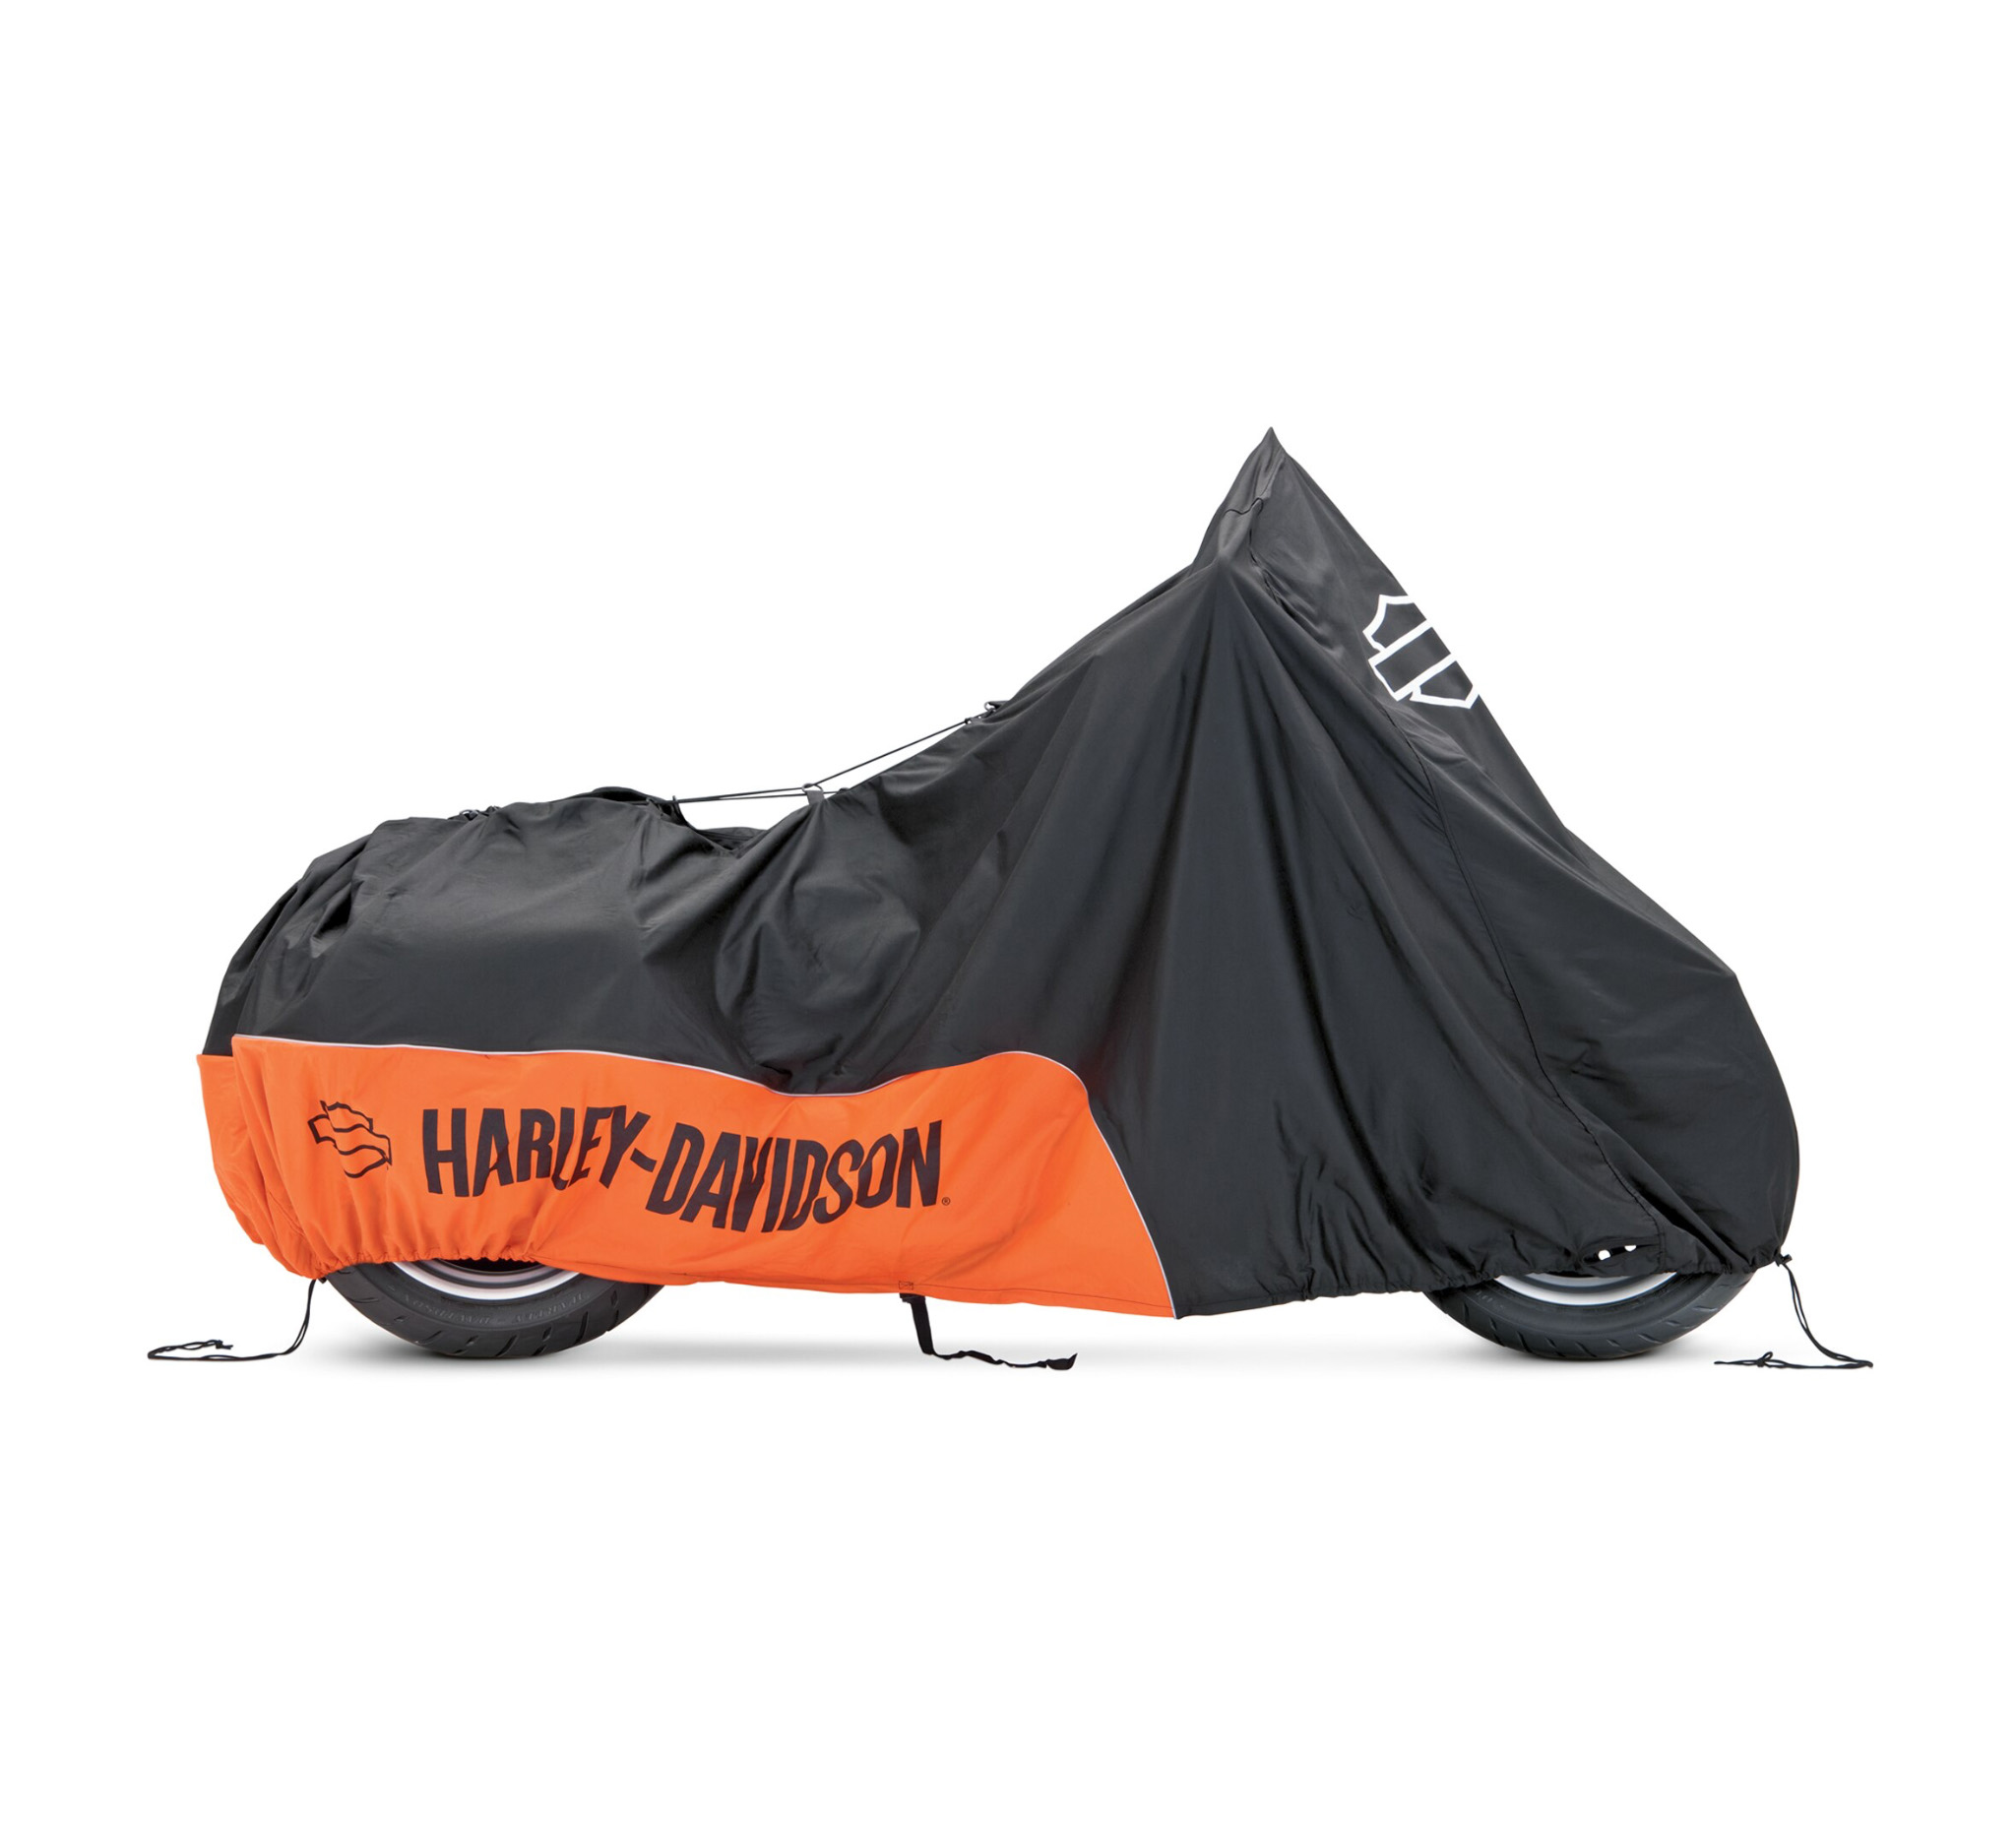 Harley Davidson Motorradplane für INNEN   93100018